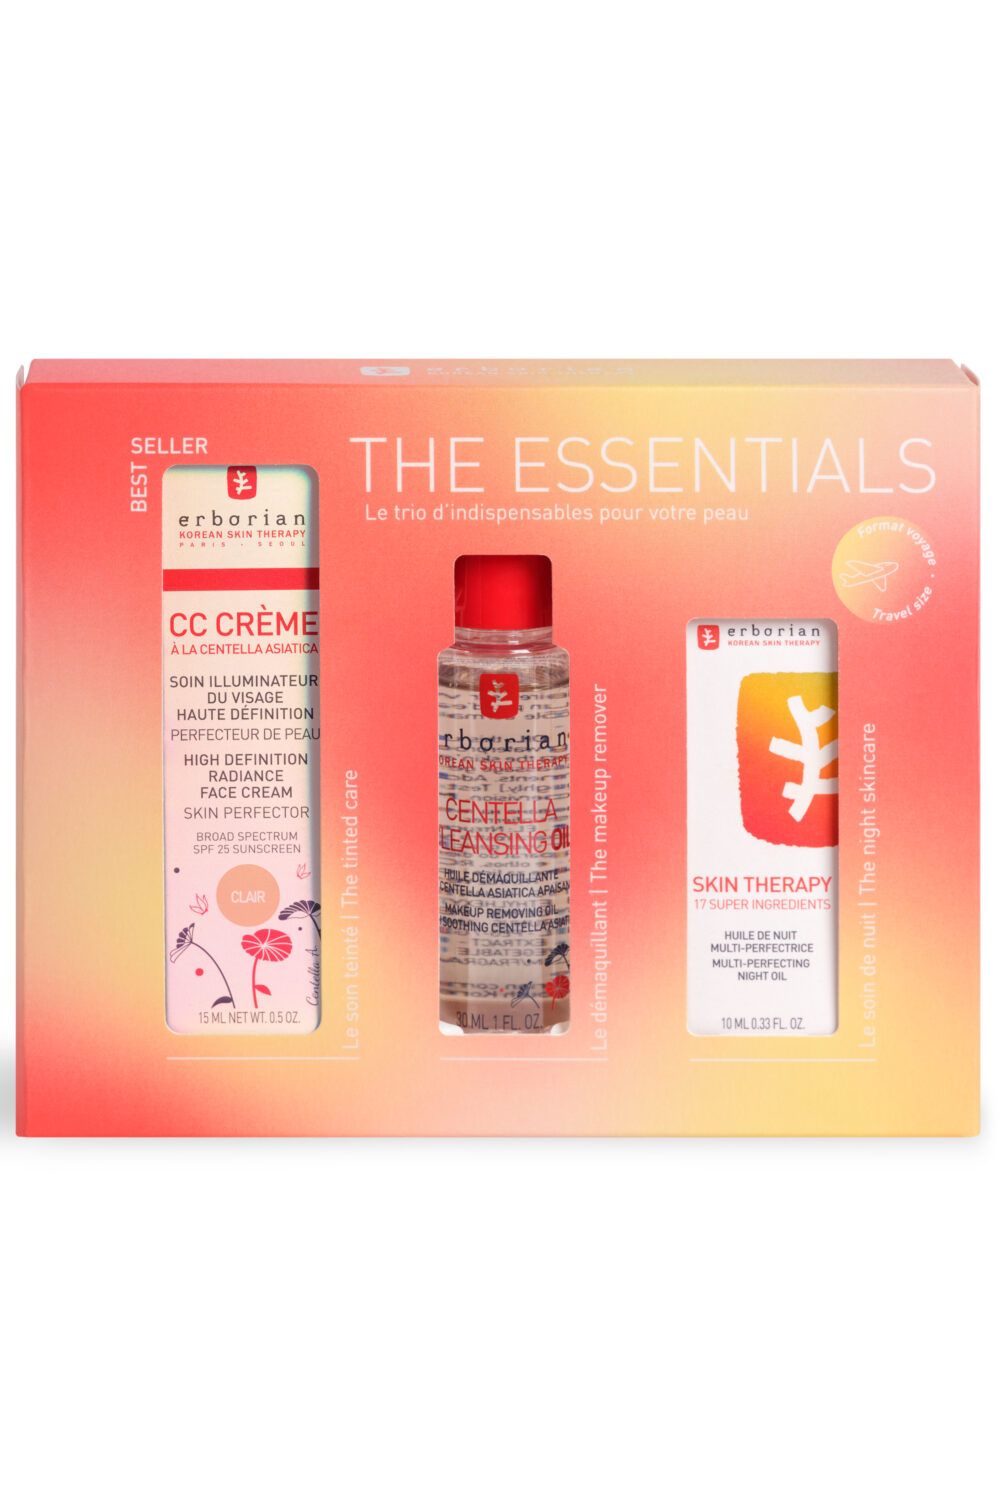 Erborian - Coffret CC Crème Claire, Centella Oil & Skin Therapy offert